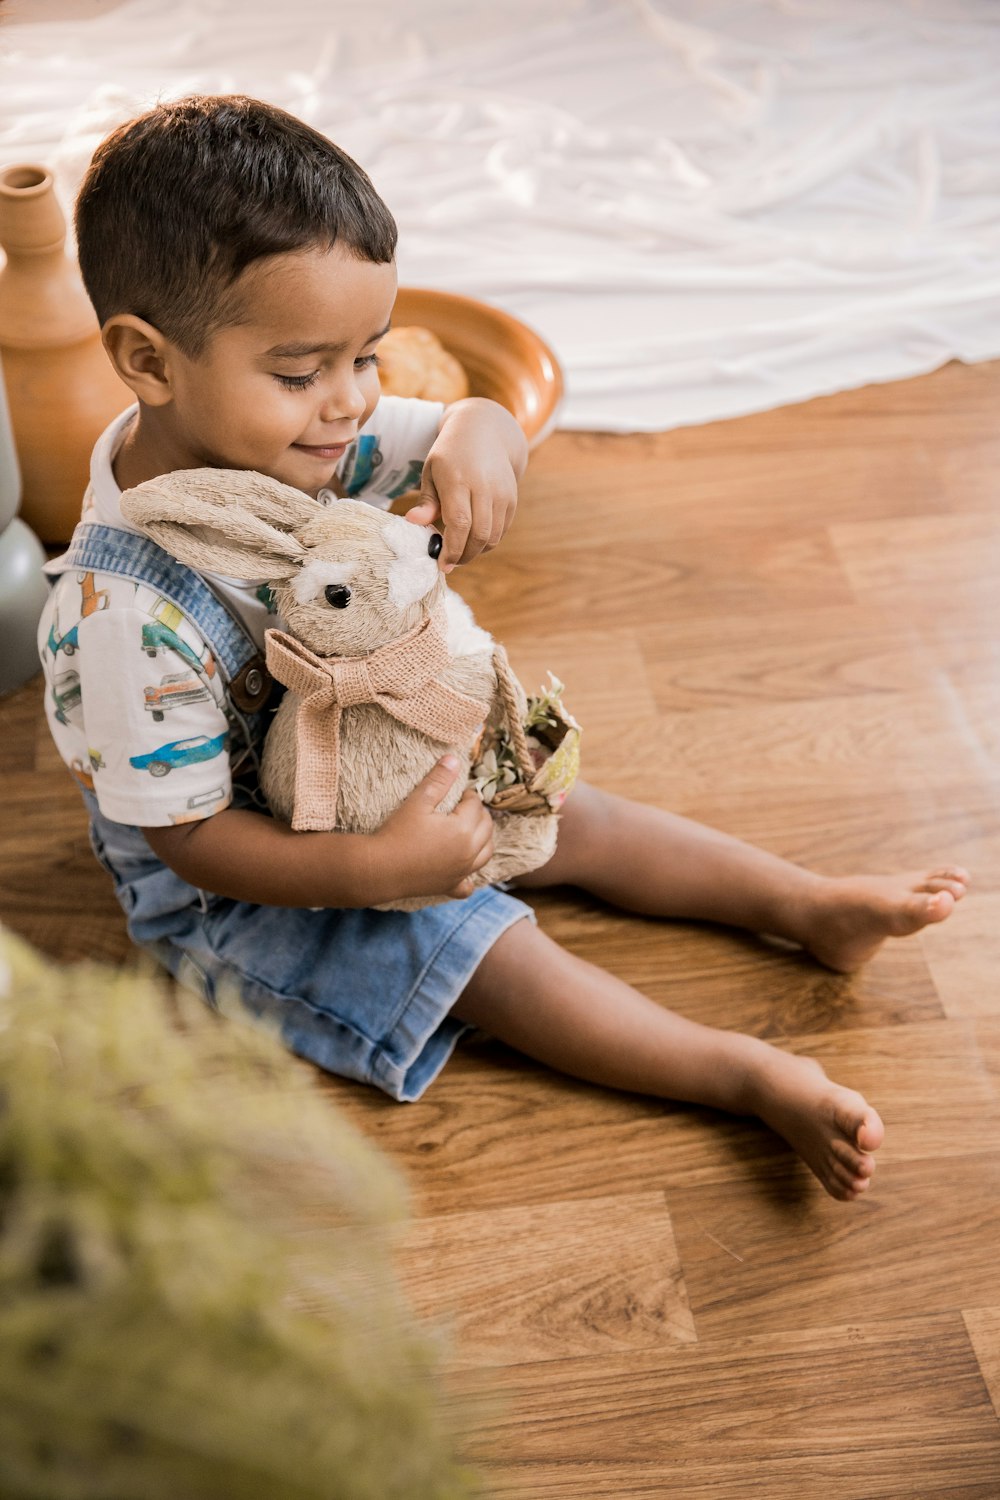 파란색 데님 반바지를 입은 소년이 흰색 토끼 봉제 장난감을 들고 바닥에 앉아 있다